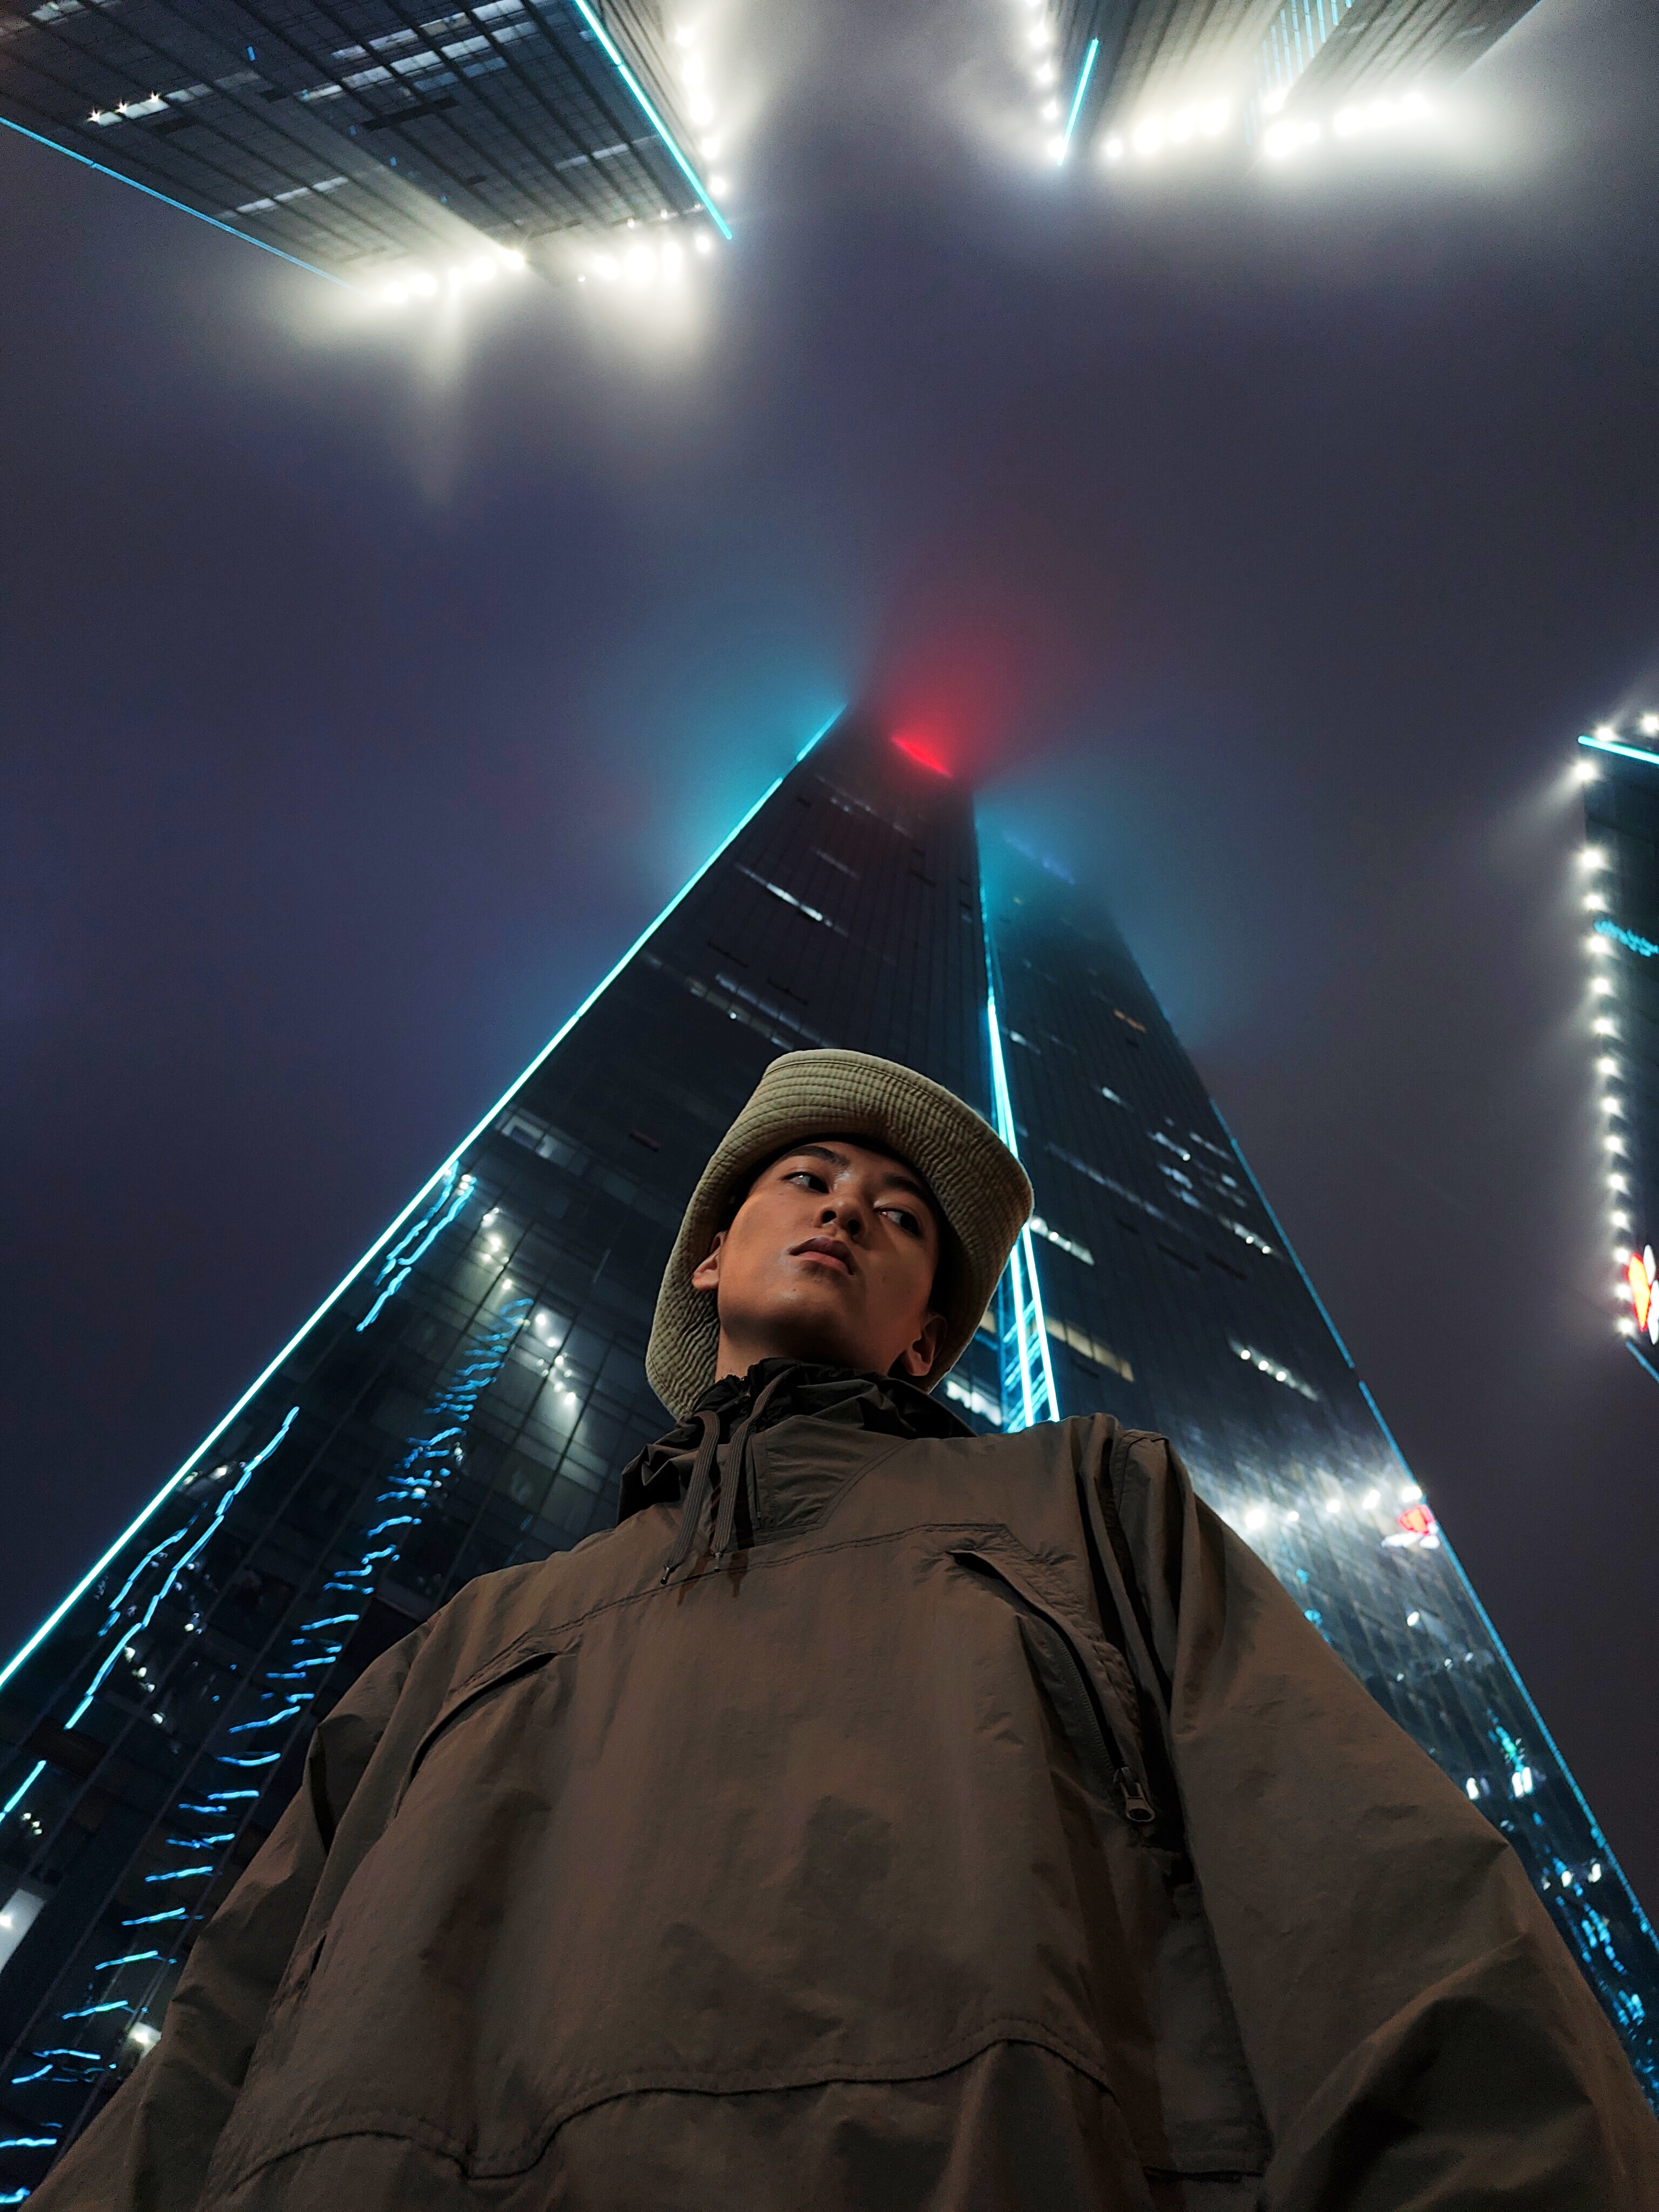 alaviistosta otettua kuva ruskeatakkisesta miehestä jonka taustalla on korkeita rakennuksia sumuisessa ja pimeässä illassa